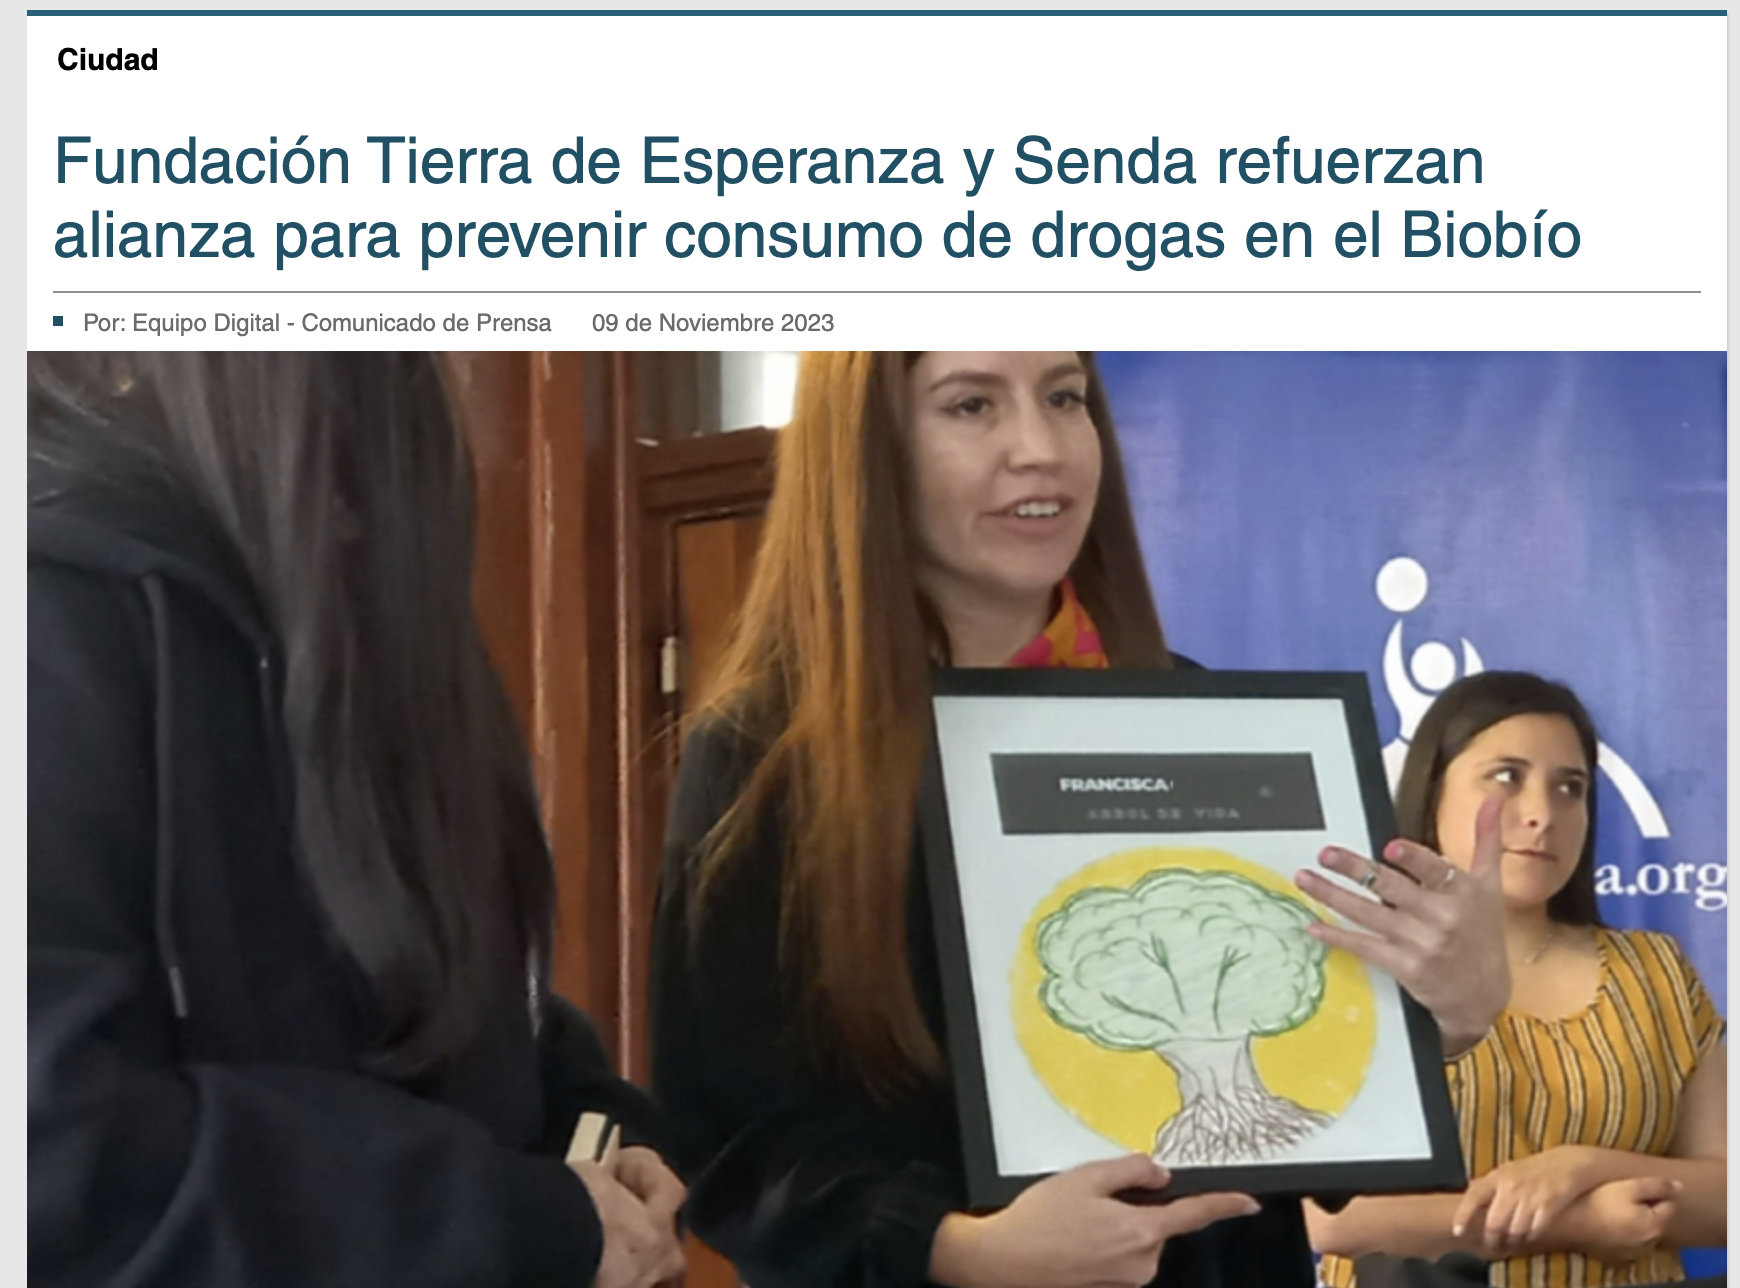 PRENSA: Fundación Tierra de Esperanza y Senda refuerzan alianza para prevenir consumo de drogas en el Biobío